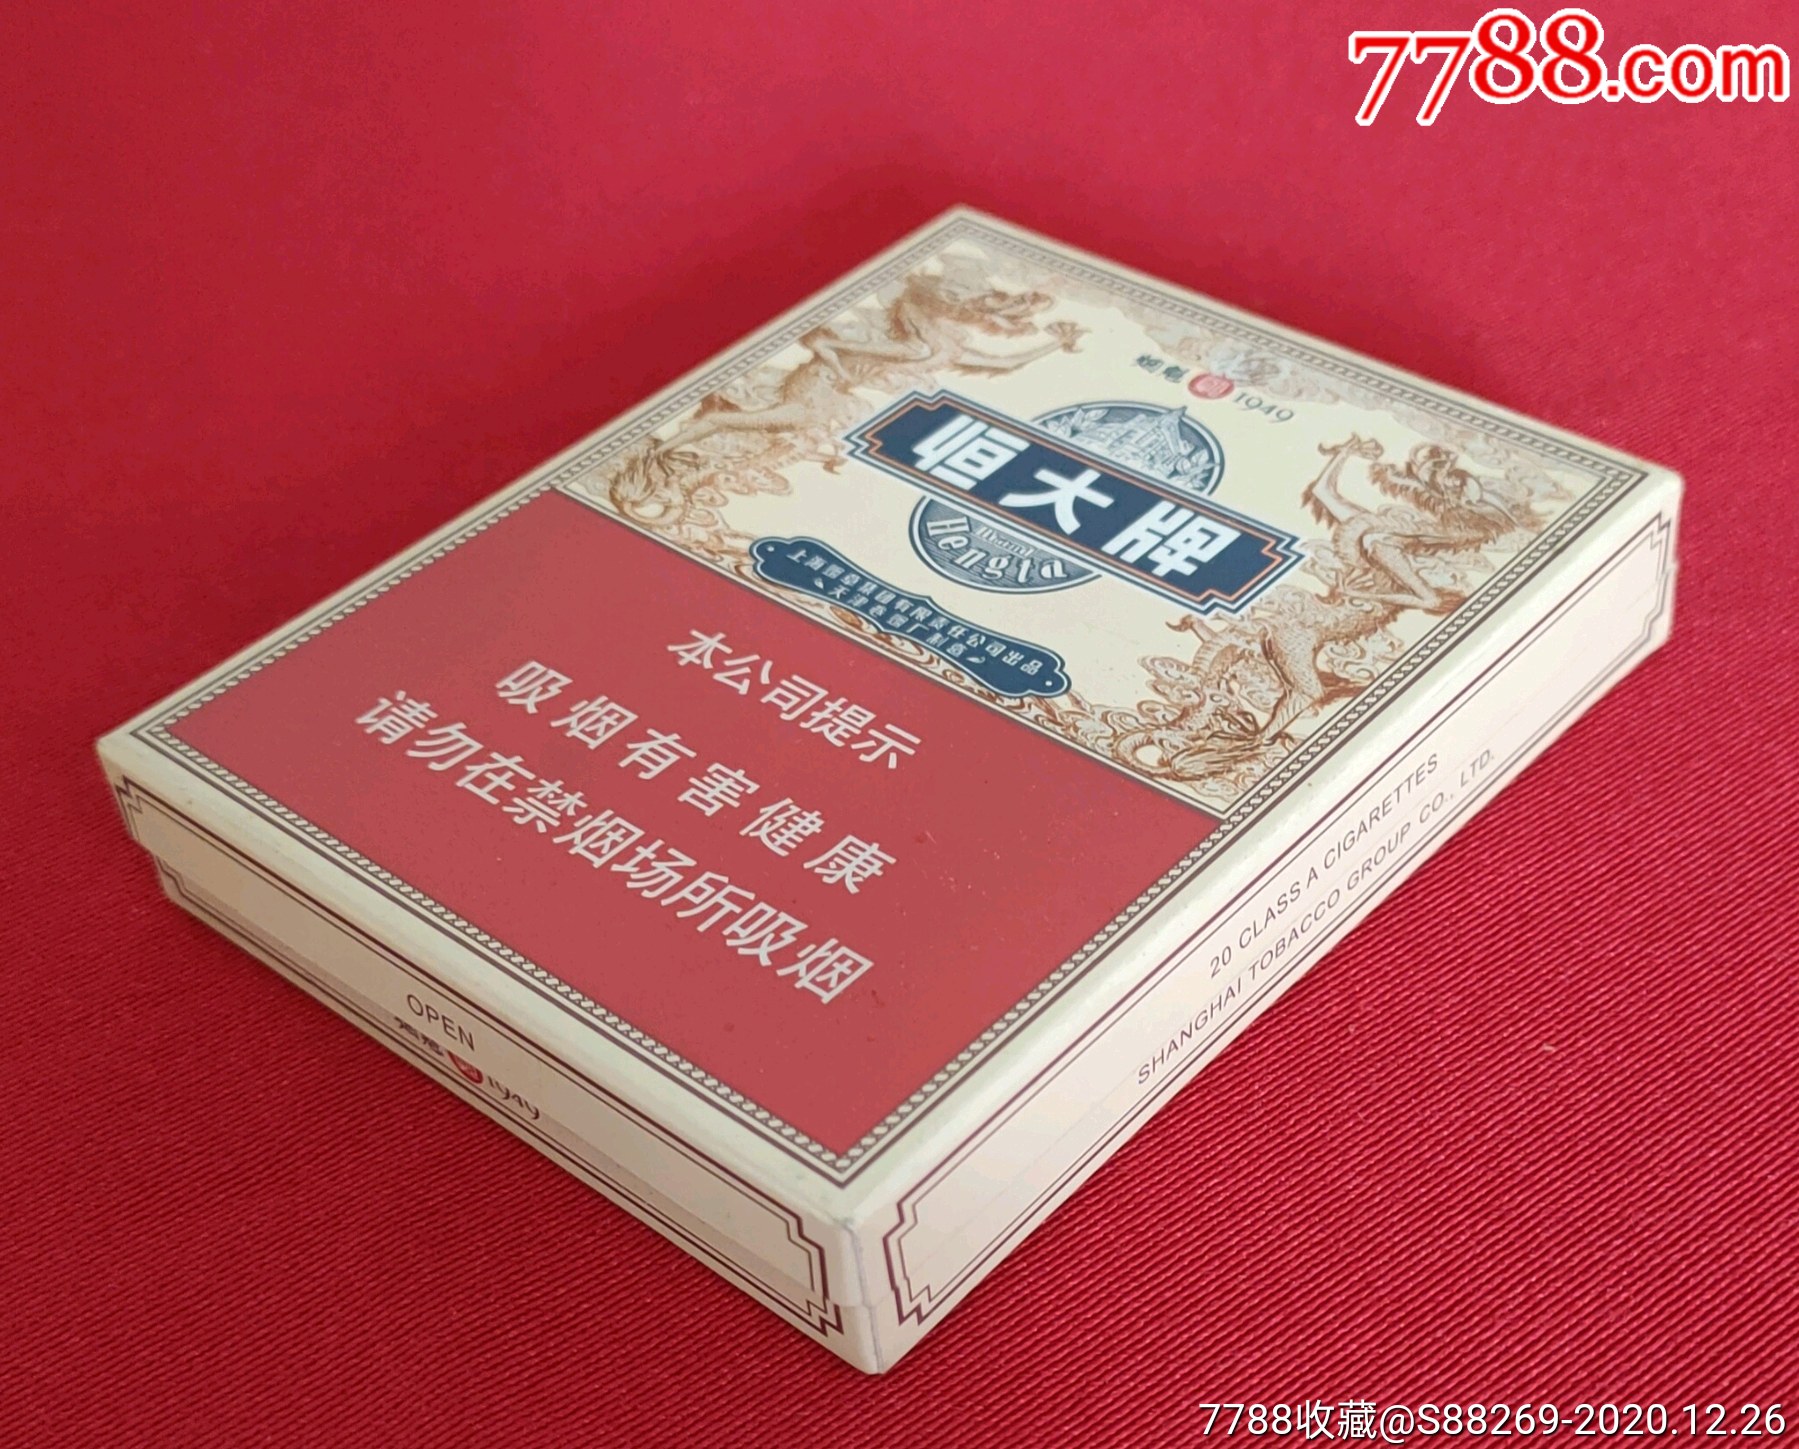 恒大牌烟魁1949盒装图片